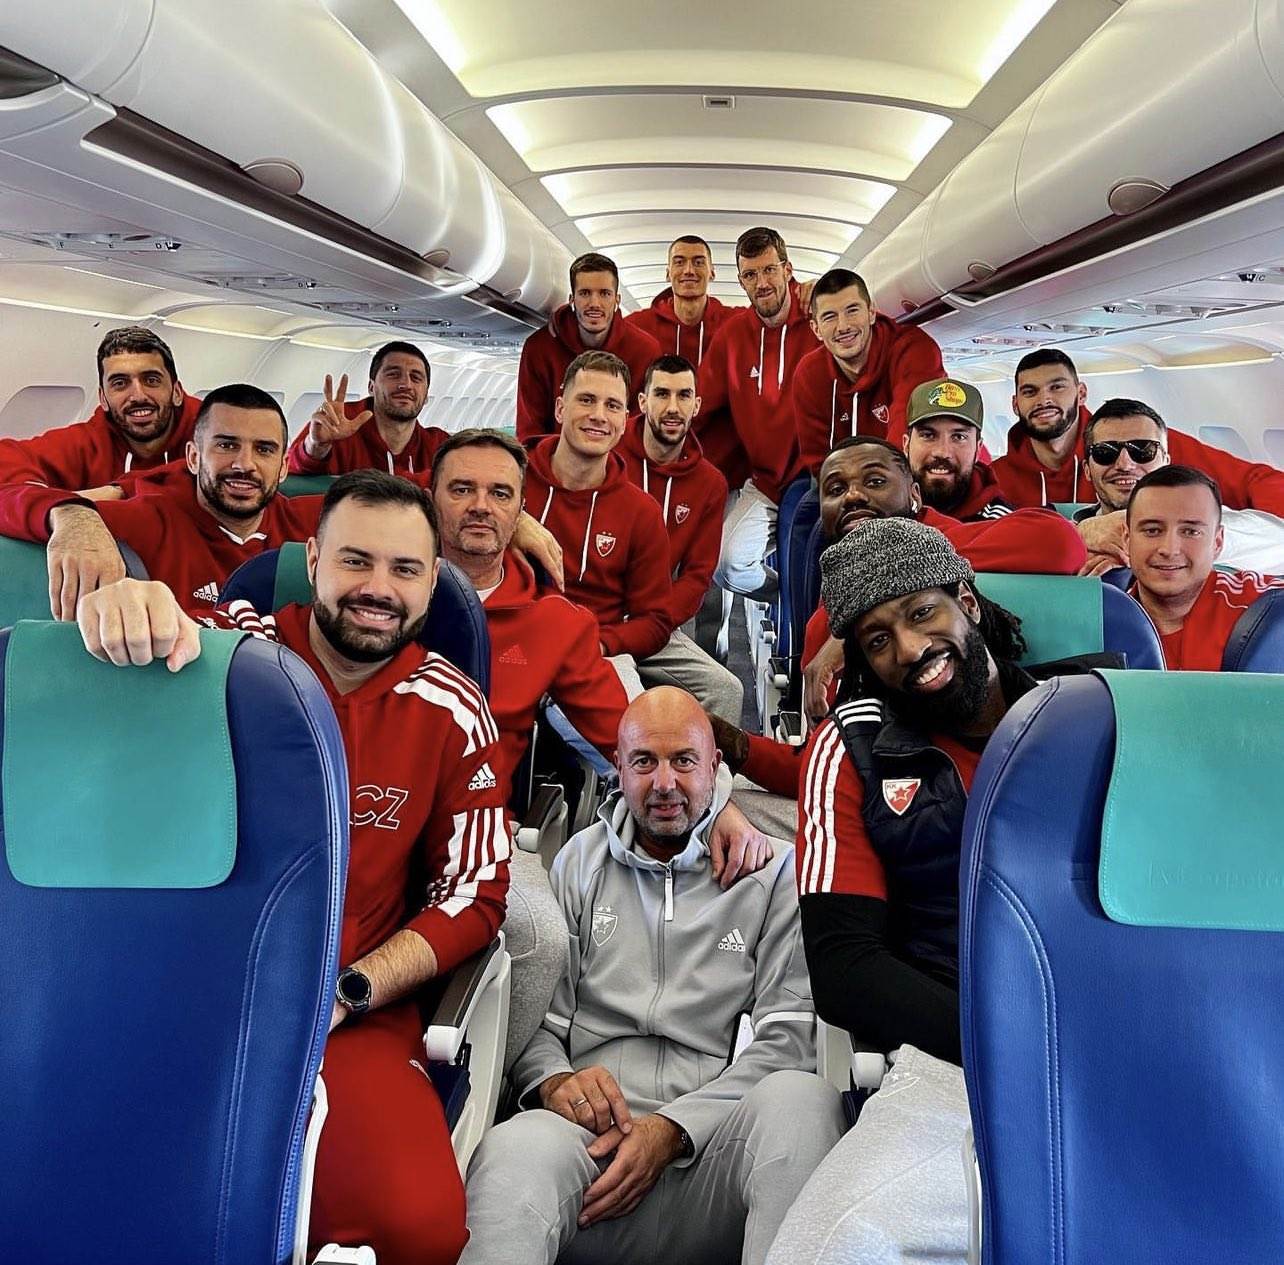  Košarkaši Crvene zvezde se javili iz aviona - odmah putuju u Skoplje 